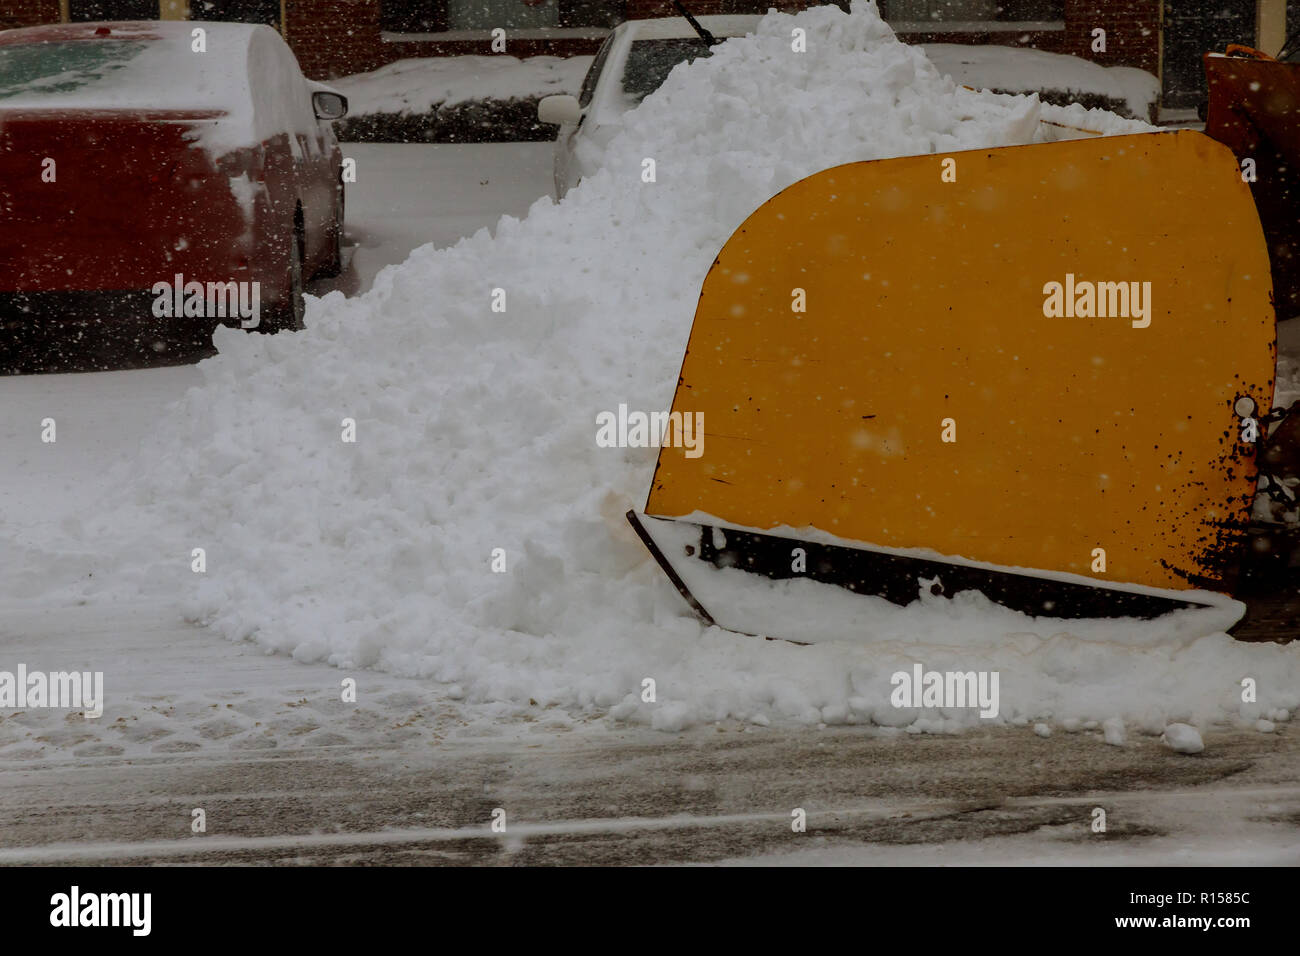 Kleines schneeräumfahrzeug, das schnee auf dem stadtplatz entfernt